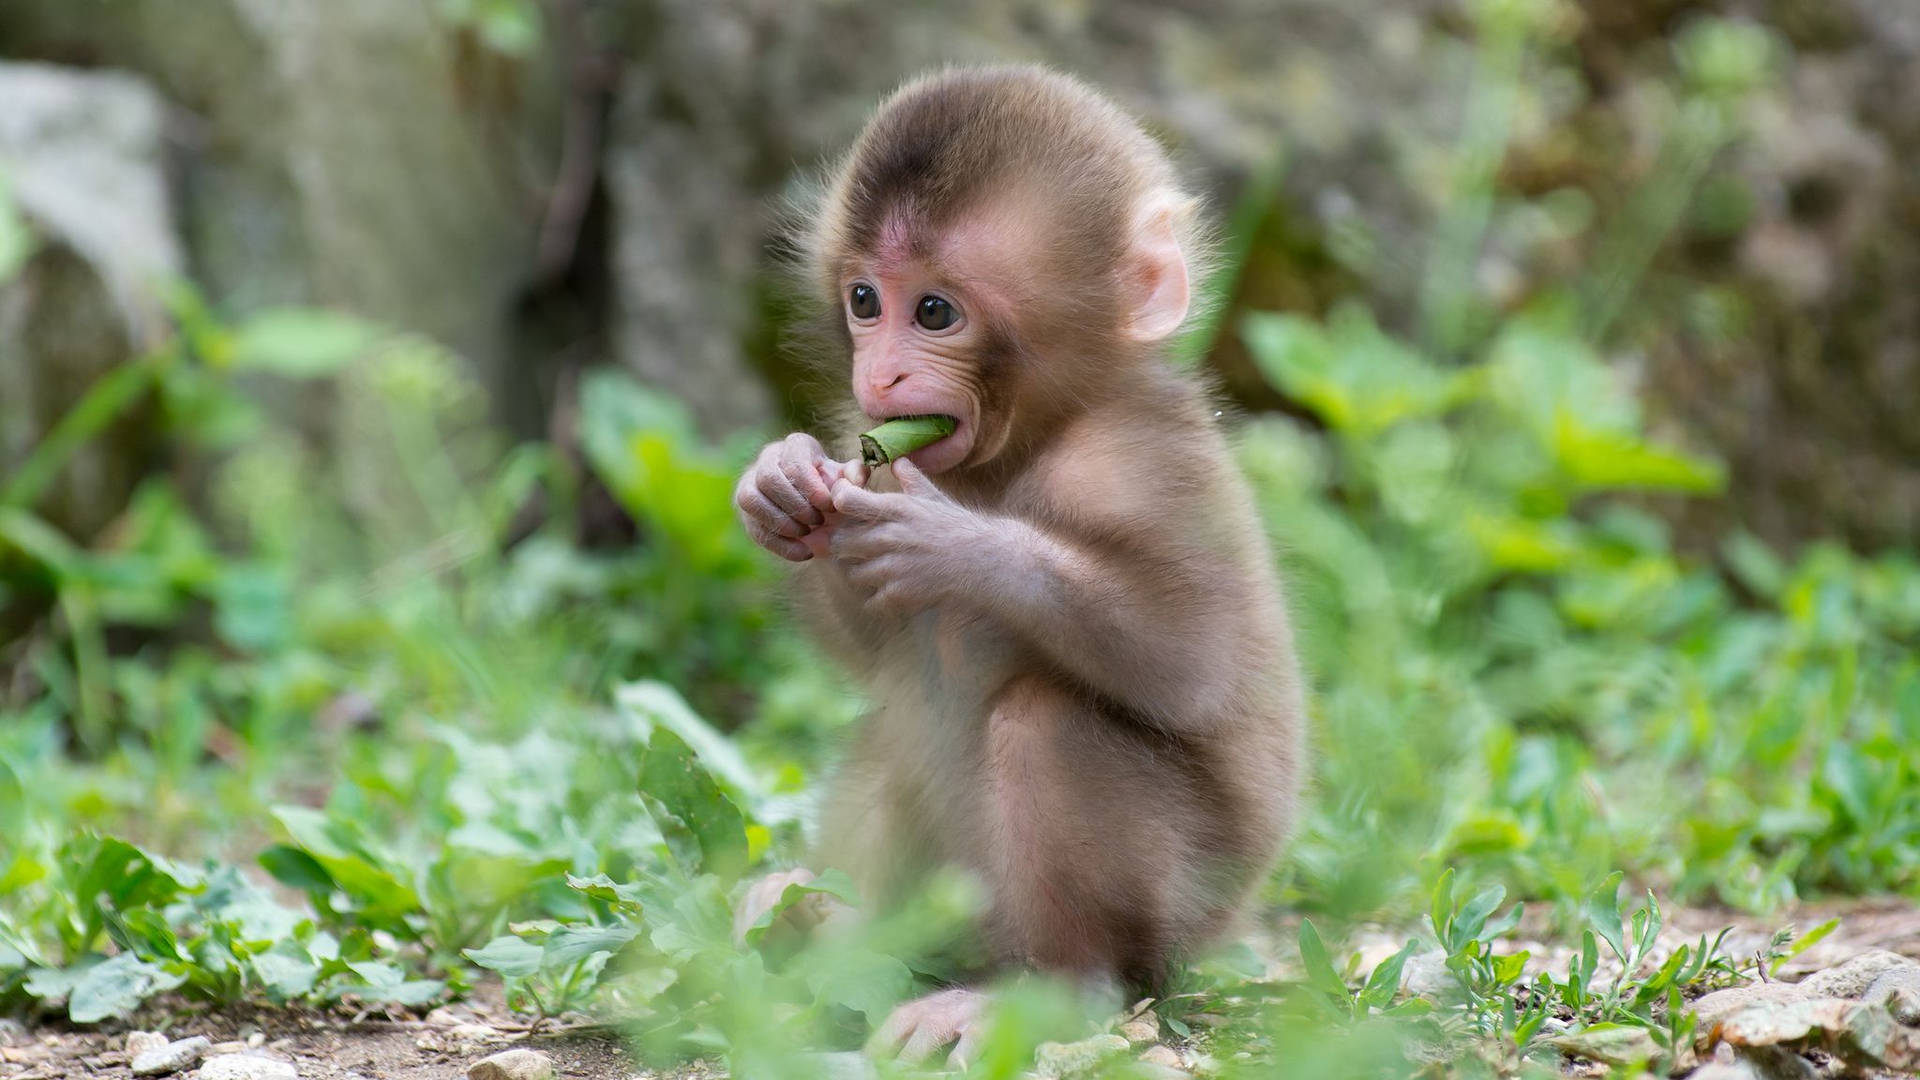 Cute Monkey Eating Leaf